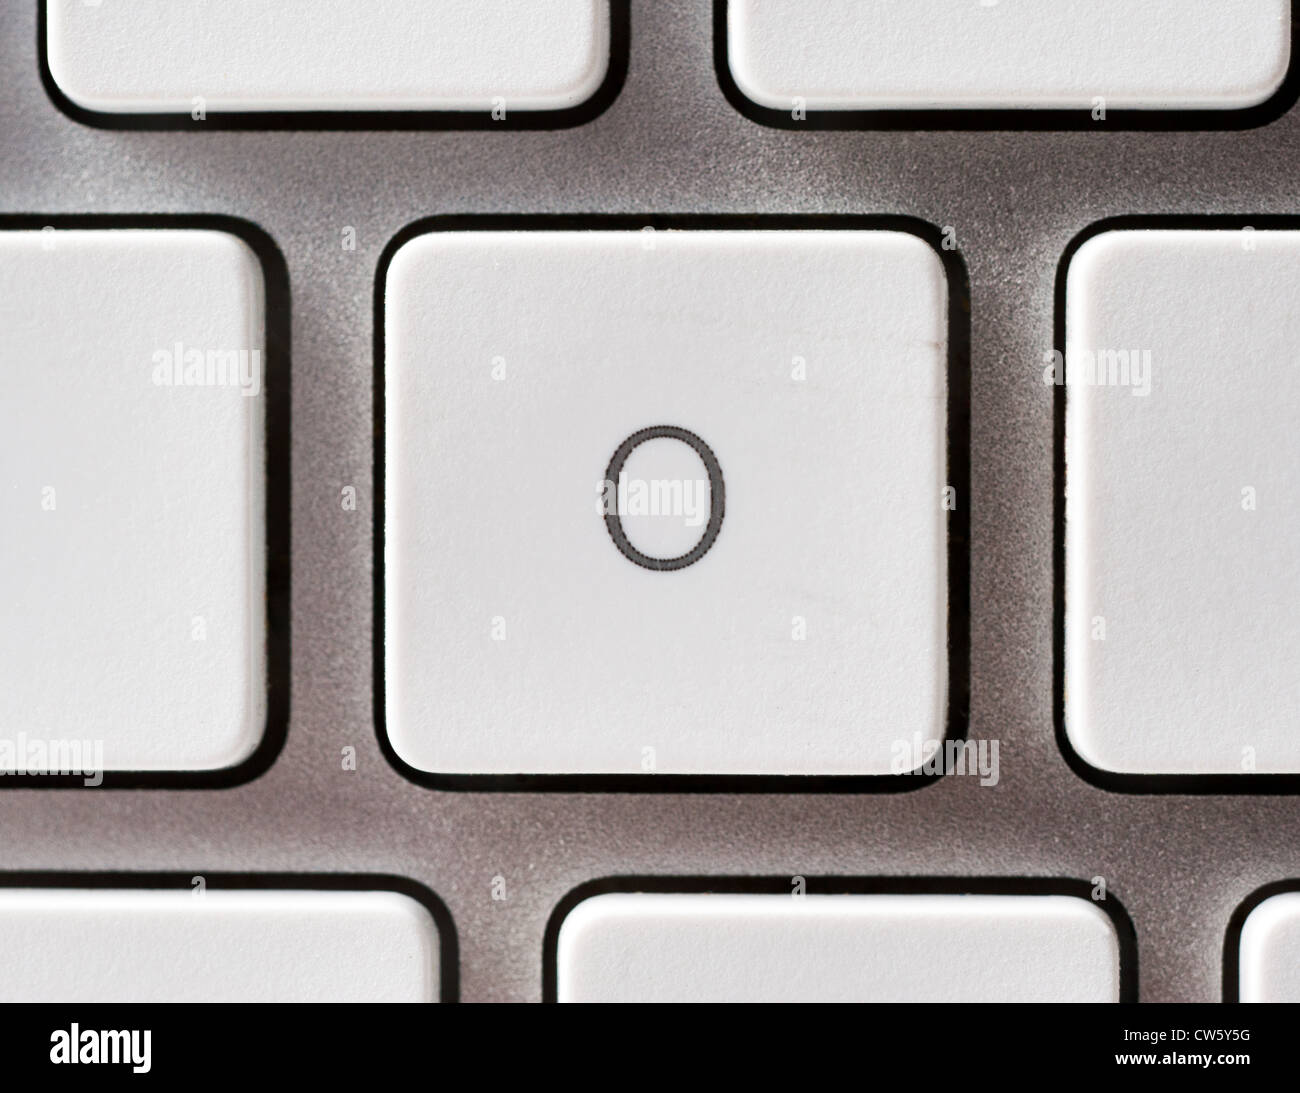 Buchstabe O auf einer Apple-Tastatur Stockfoto